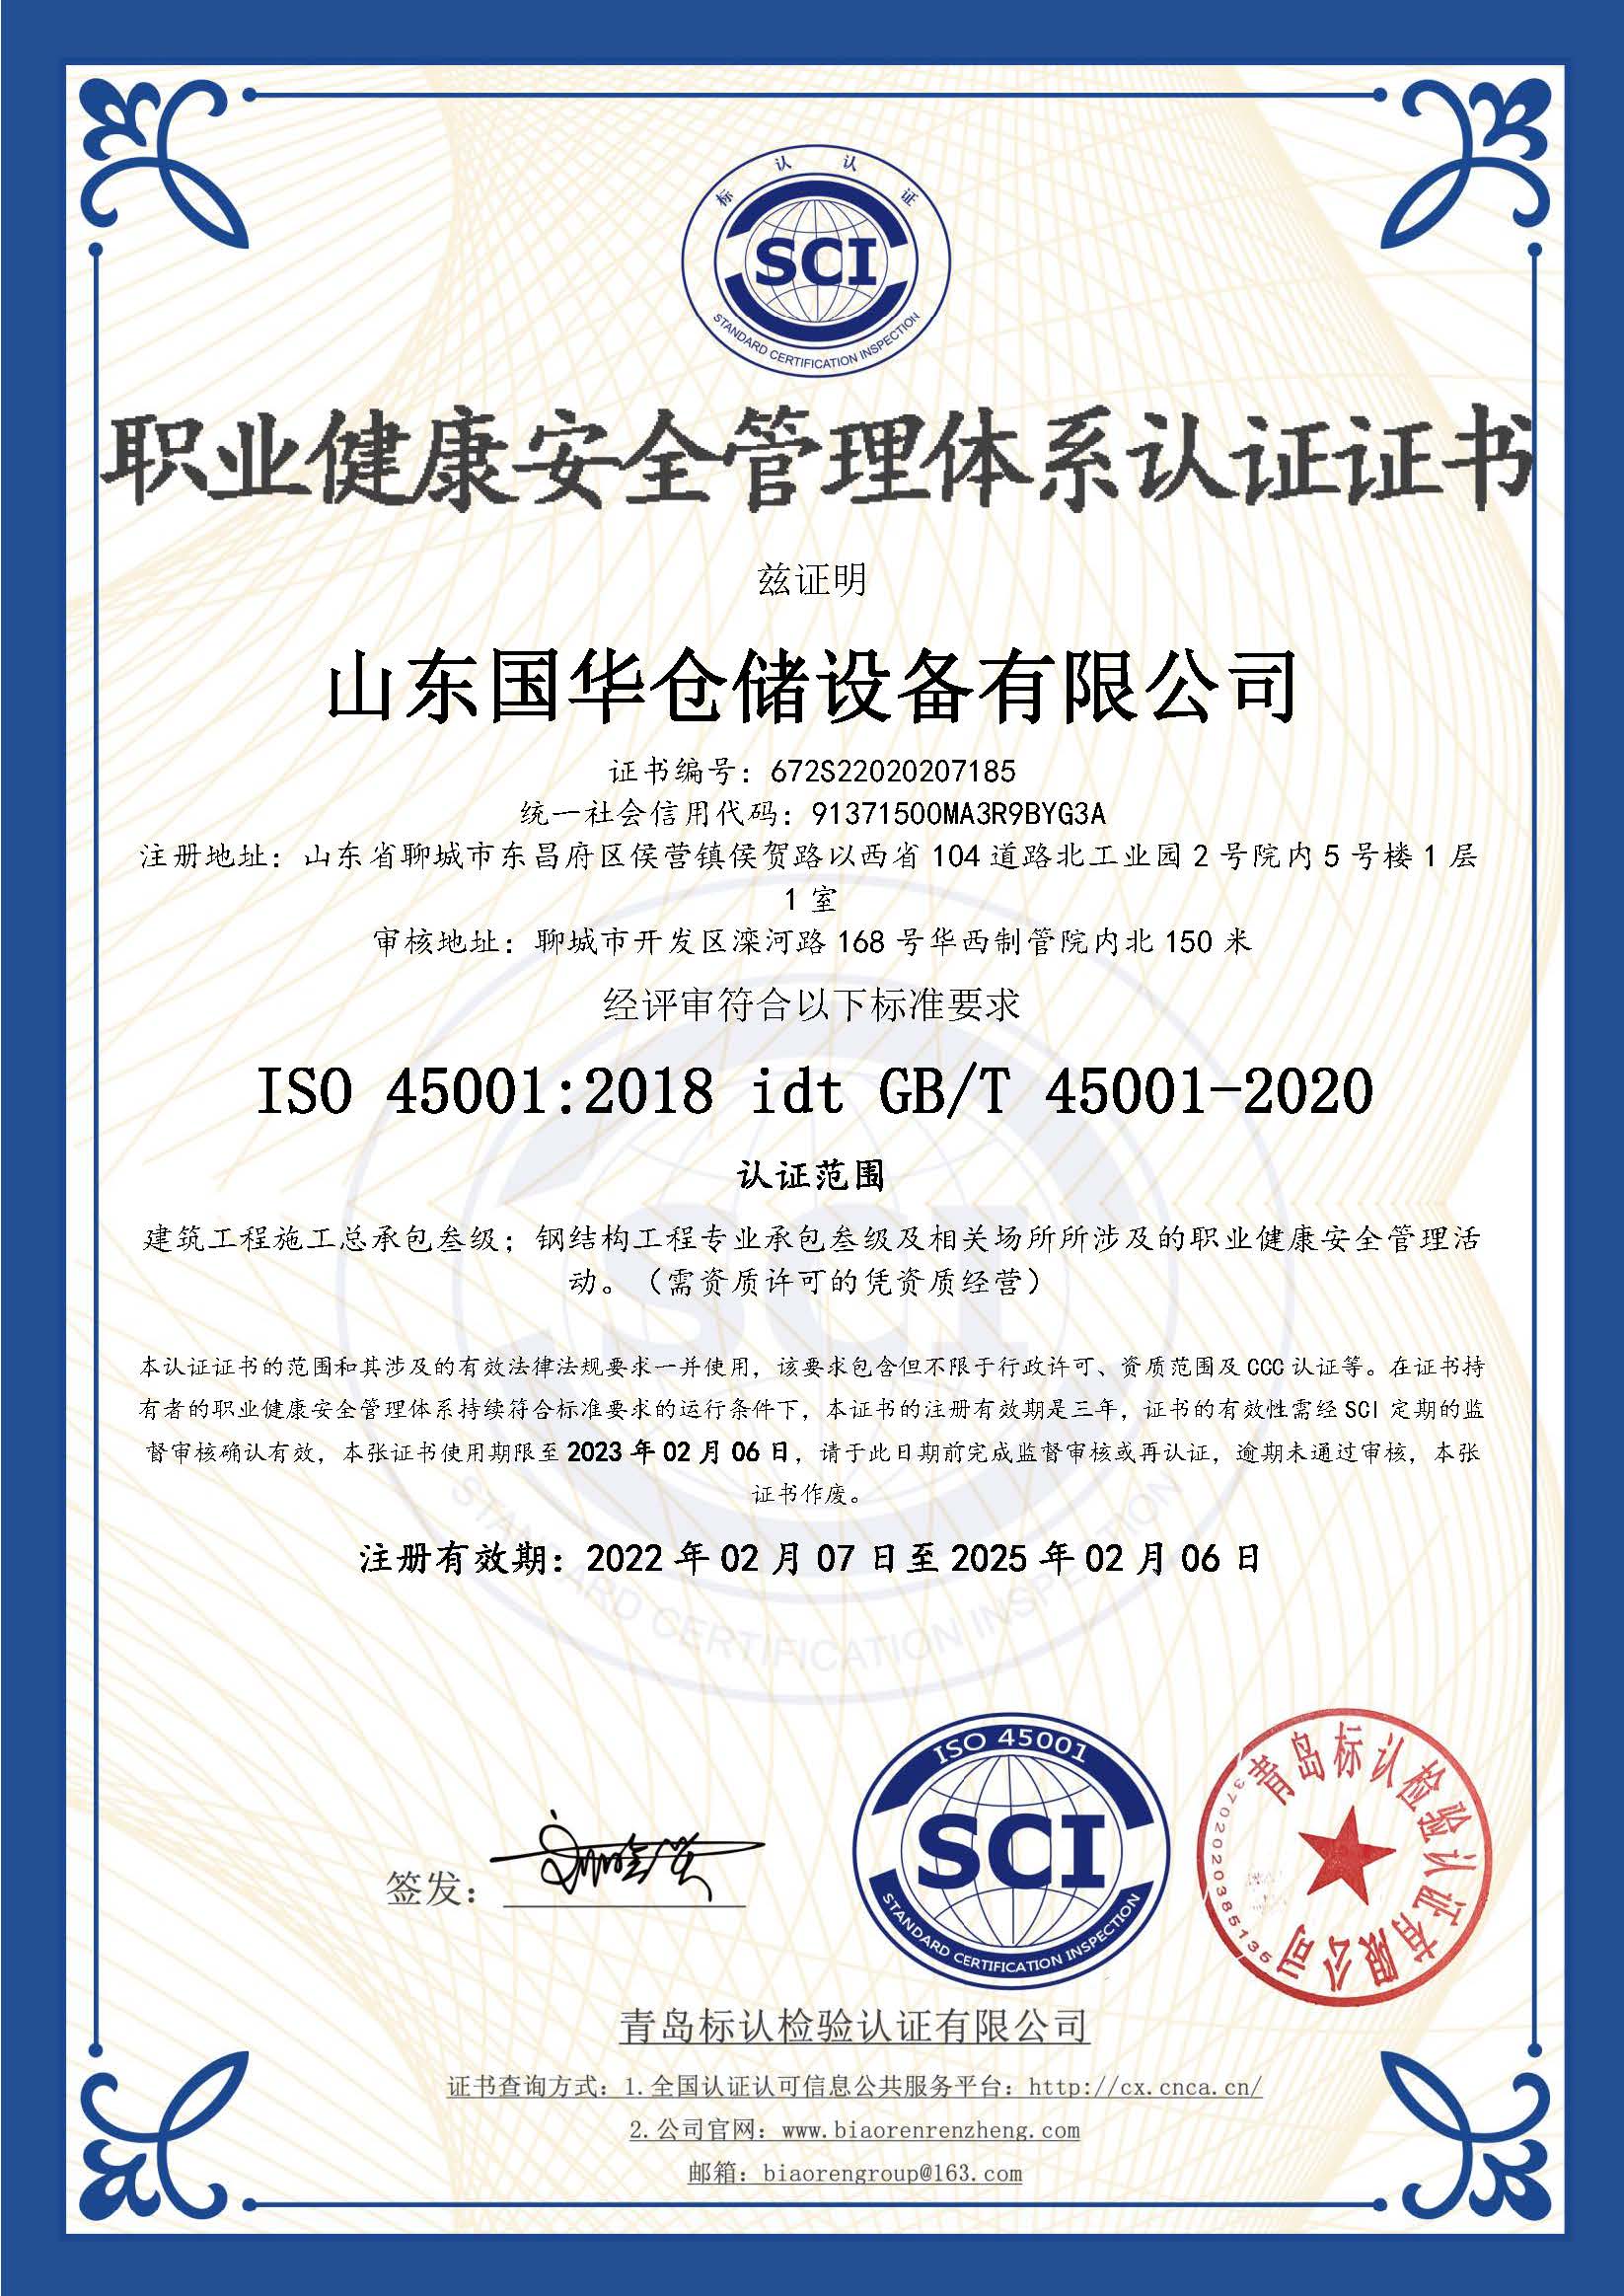 葫芦岛钢板仓职业健康安全管理体系认证证书